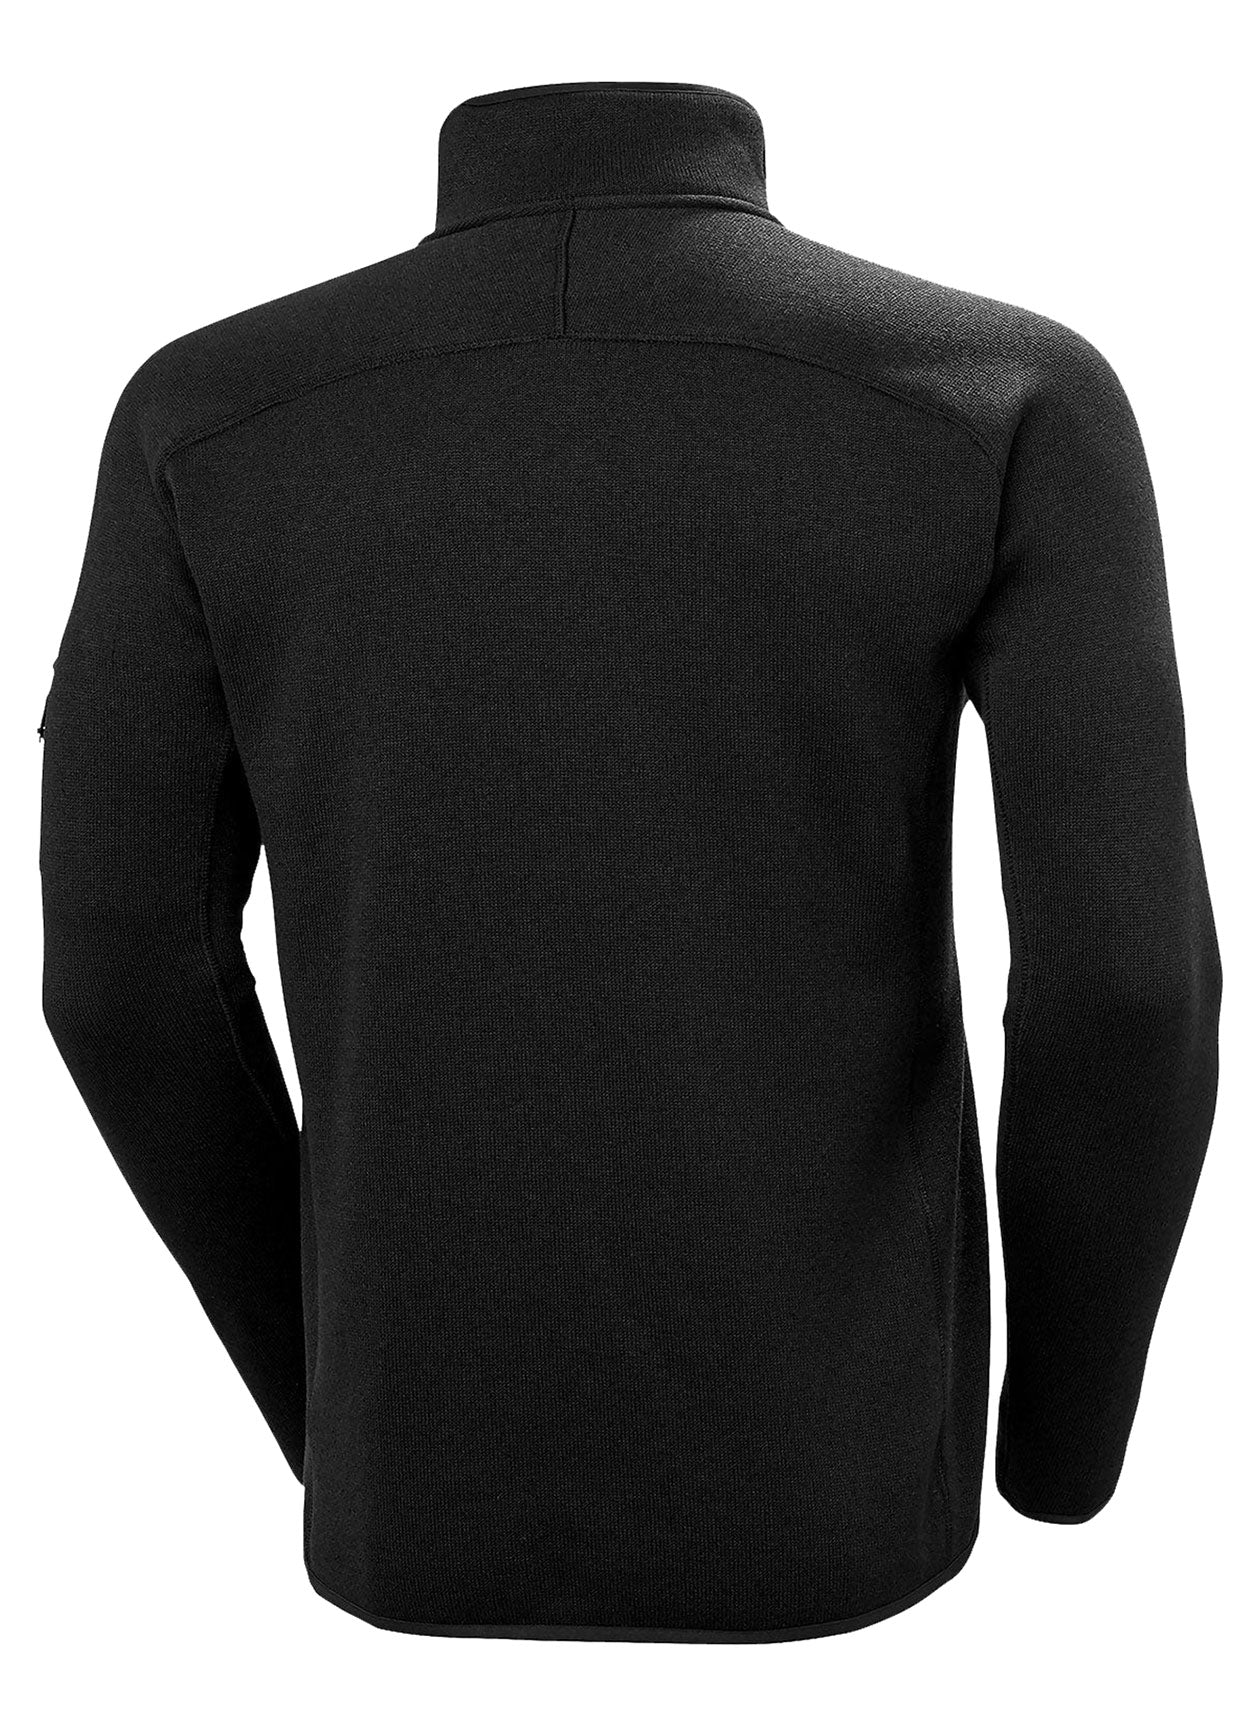 Helly Hansen Varde Fleece Custom Jackets, Black